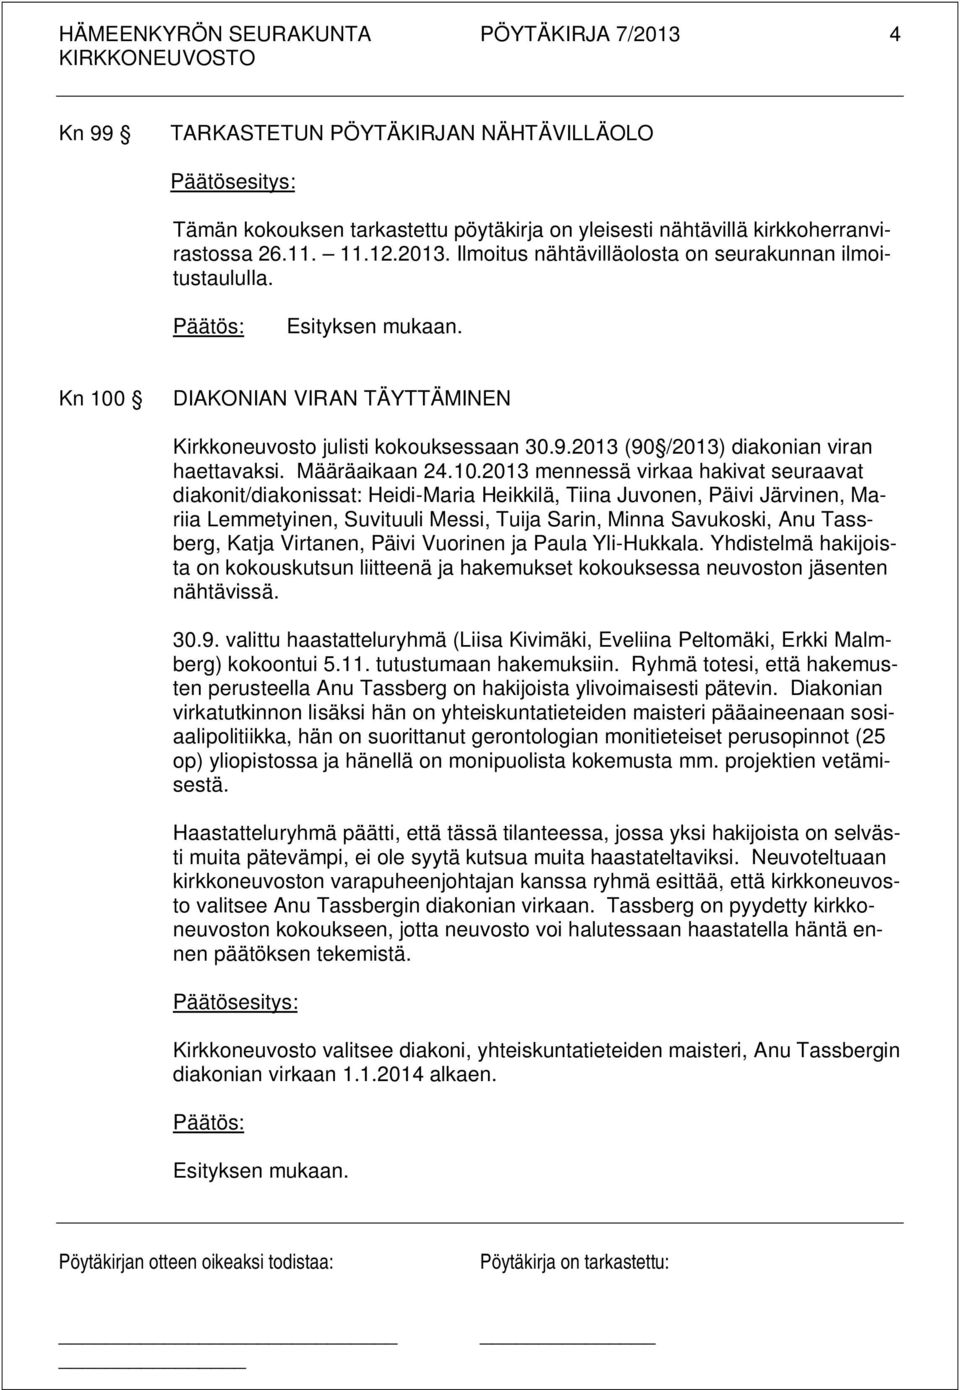 DIAKONIAN VIRAN TÄYTTÄMINEN Kirkkoneuvosto julisti kokouksessaan 30.9.2013 (90 /2013) diakonian viran haettavaksi. Määräaikaan 24.10.